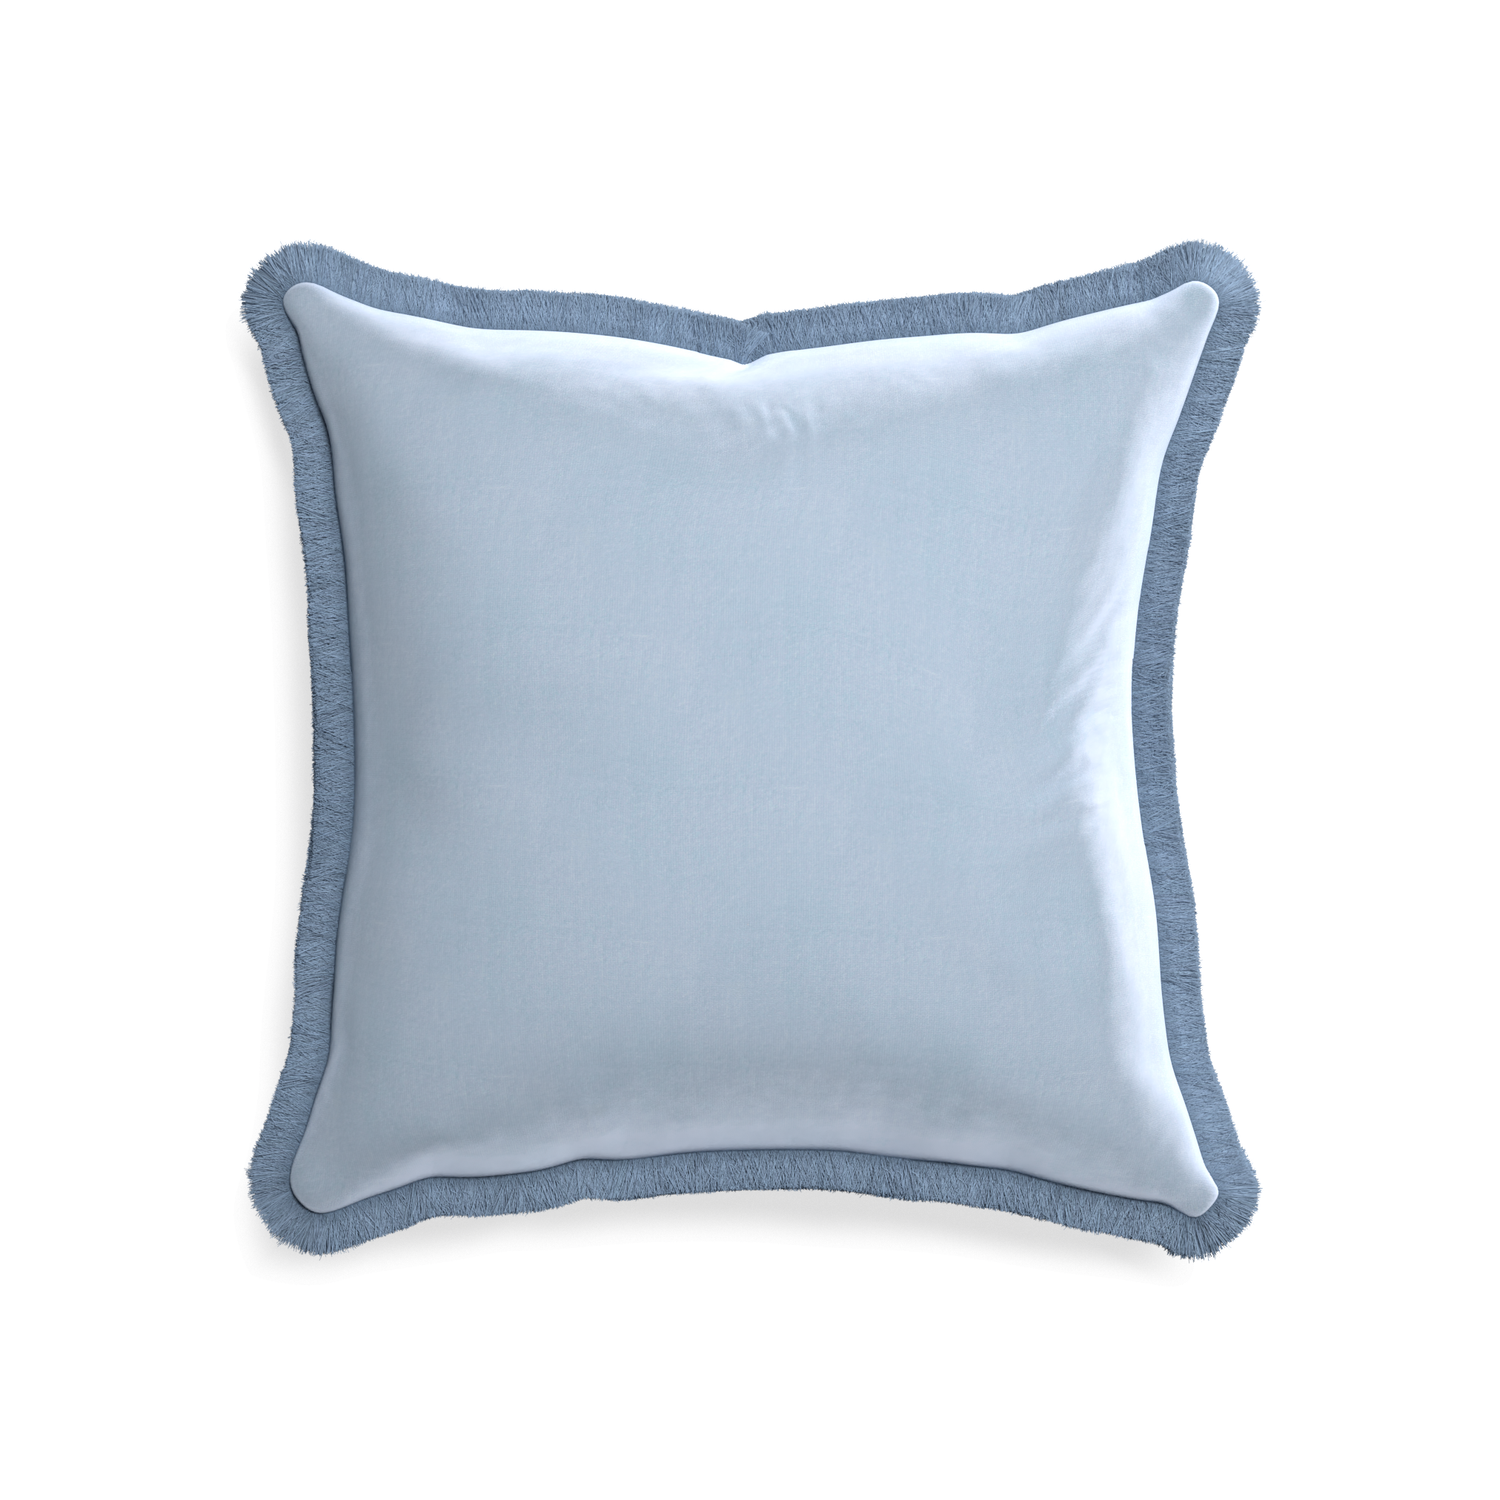 20-square sky velvet custom pillow with sky fringe on white background